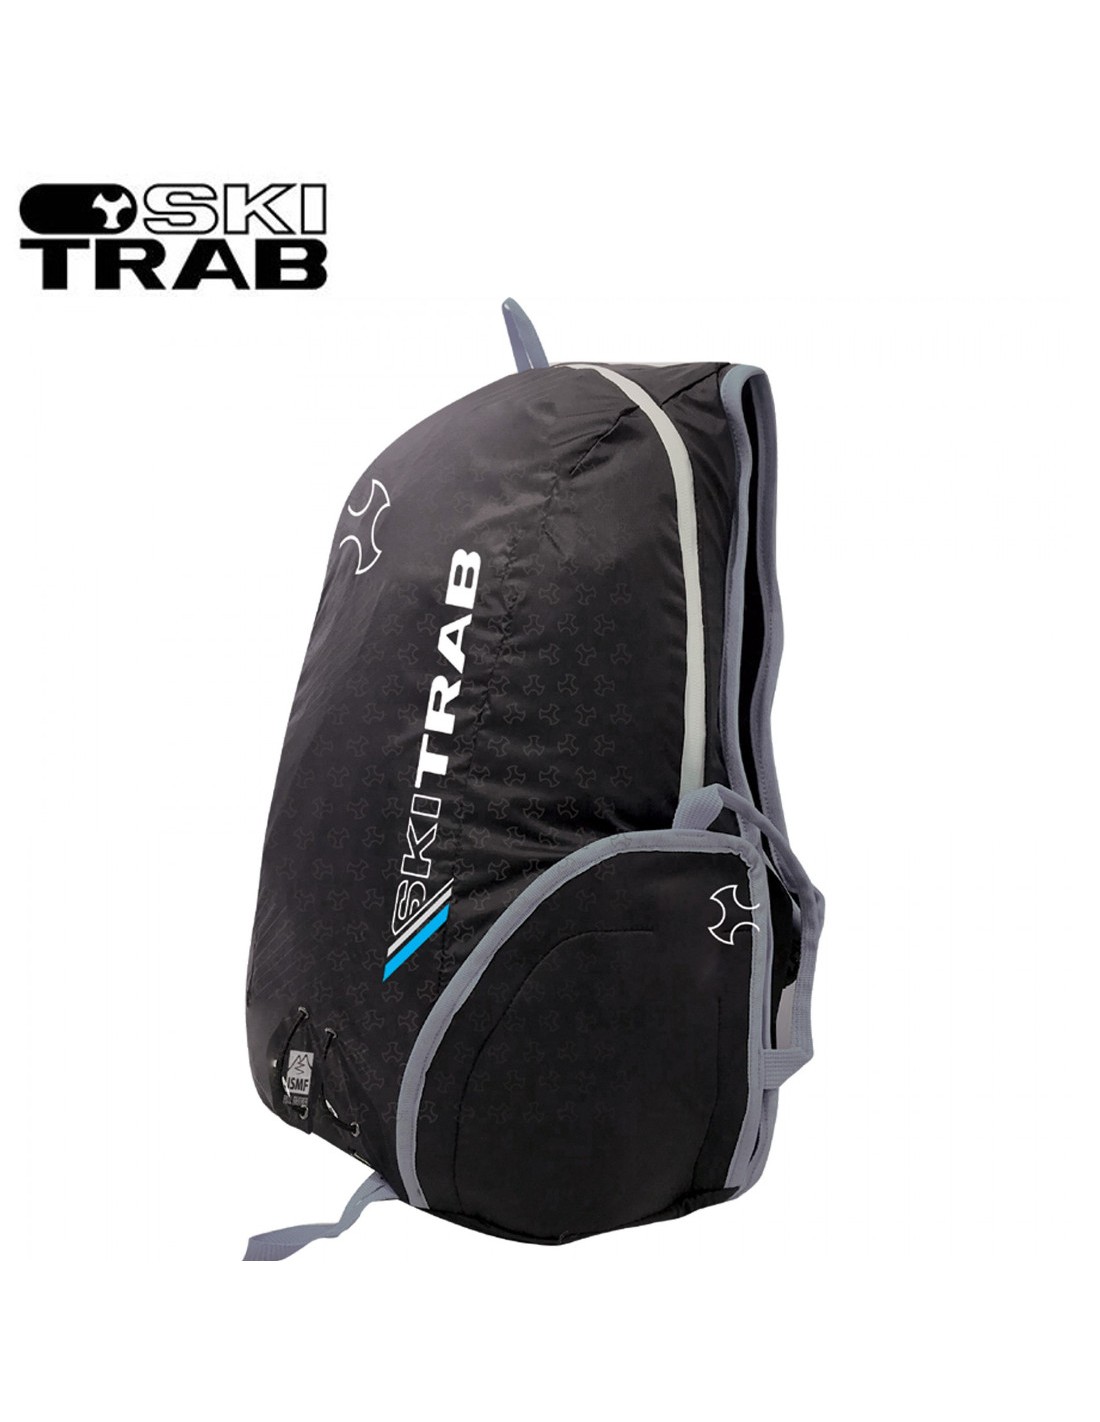 Gara 2.0 Backpack- SKI TRAB